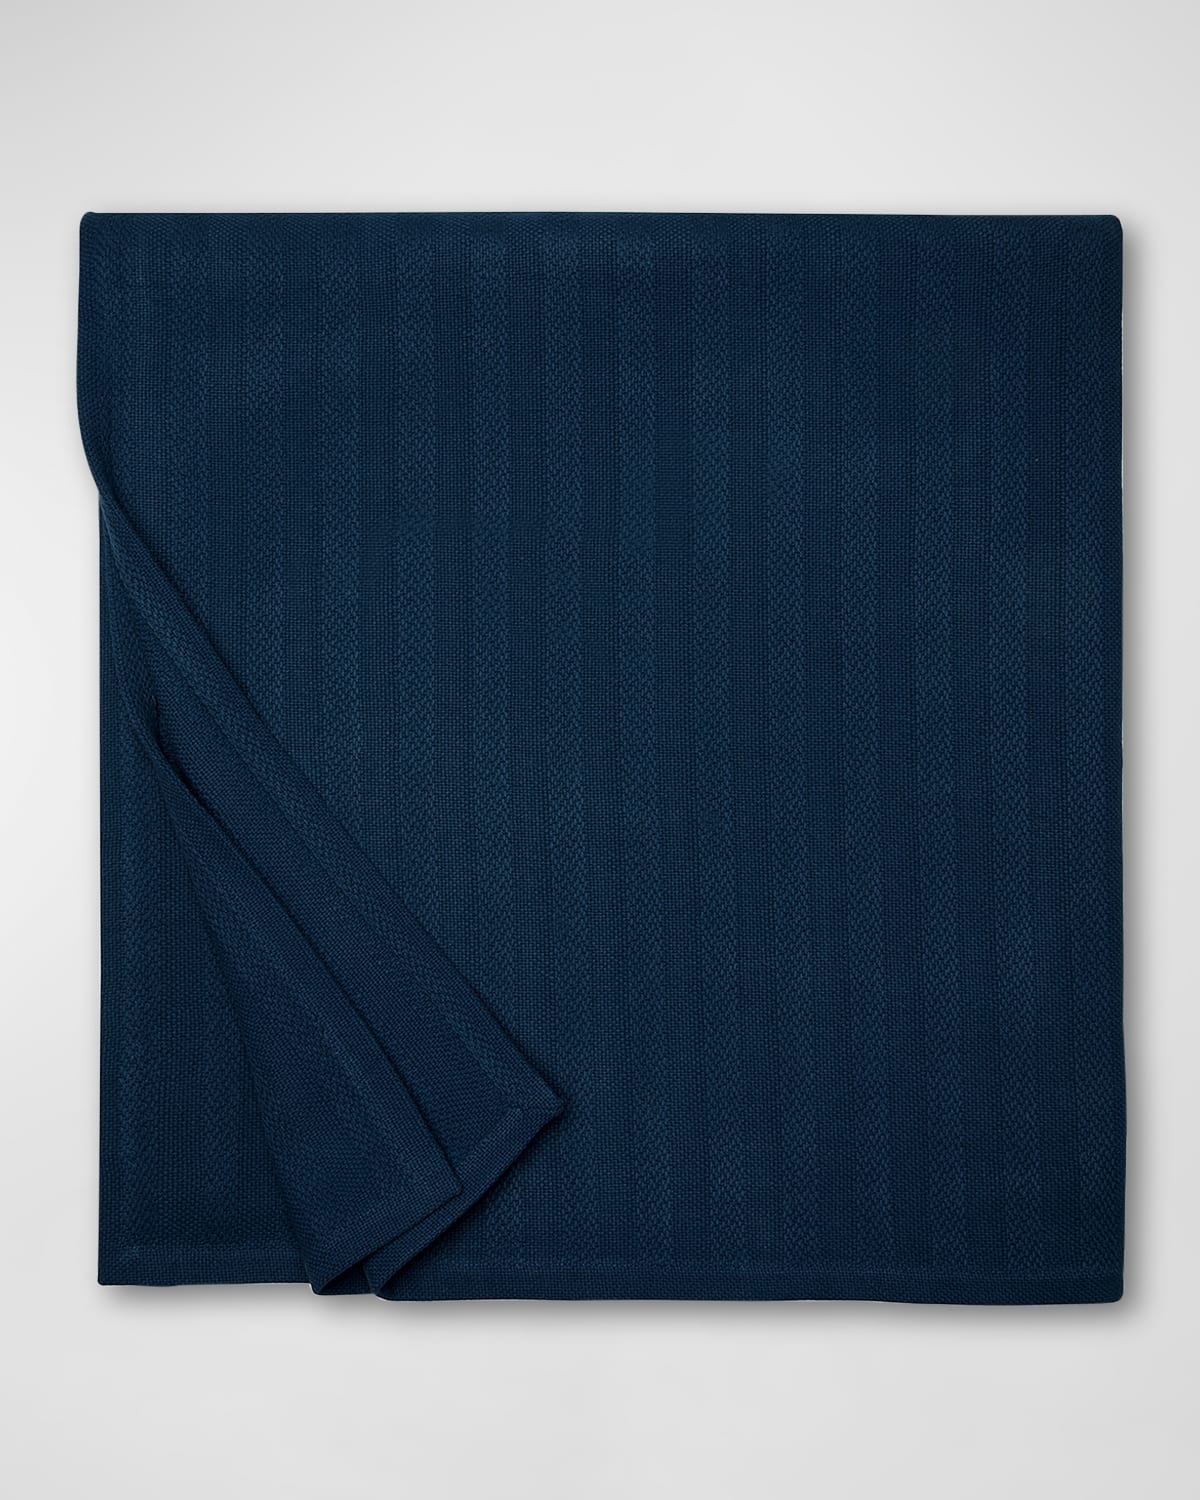 Sferra Tavira King Blanket 120" X 100" In Blue